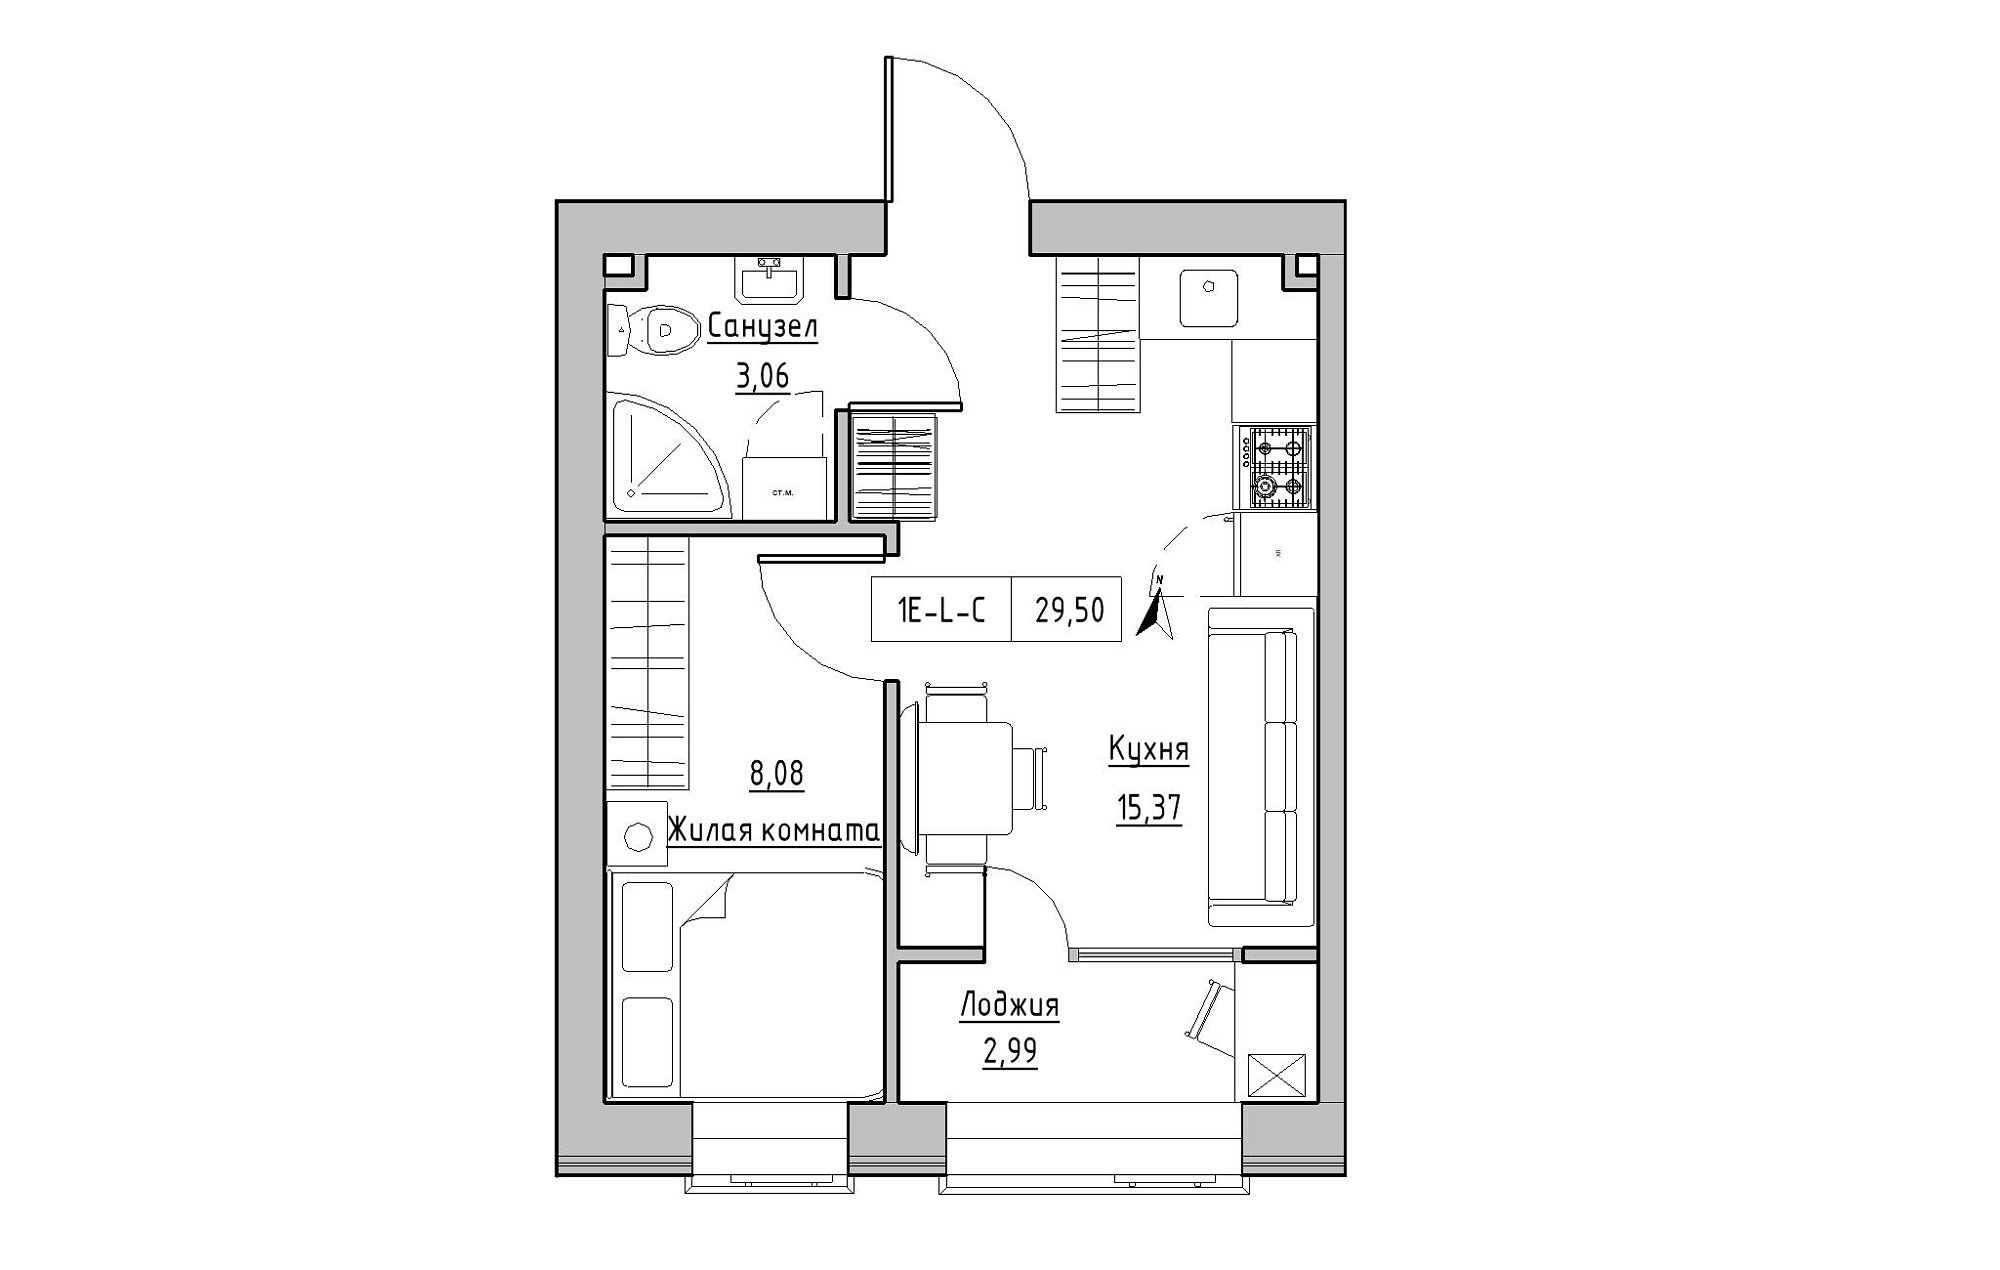 Планировка 1-к квартира площей 29.5м2, KS-019-04/0010.